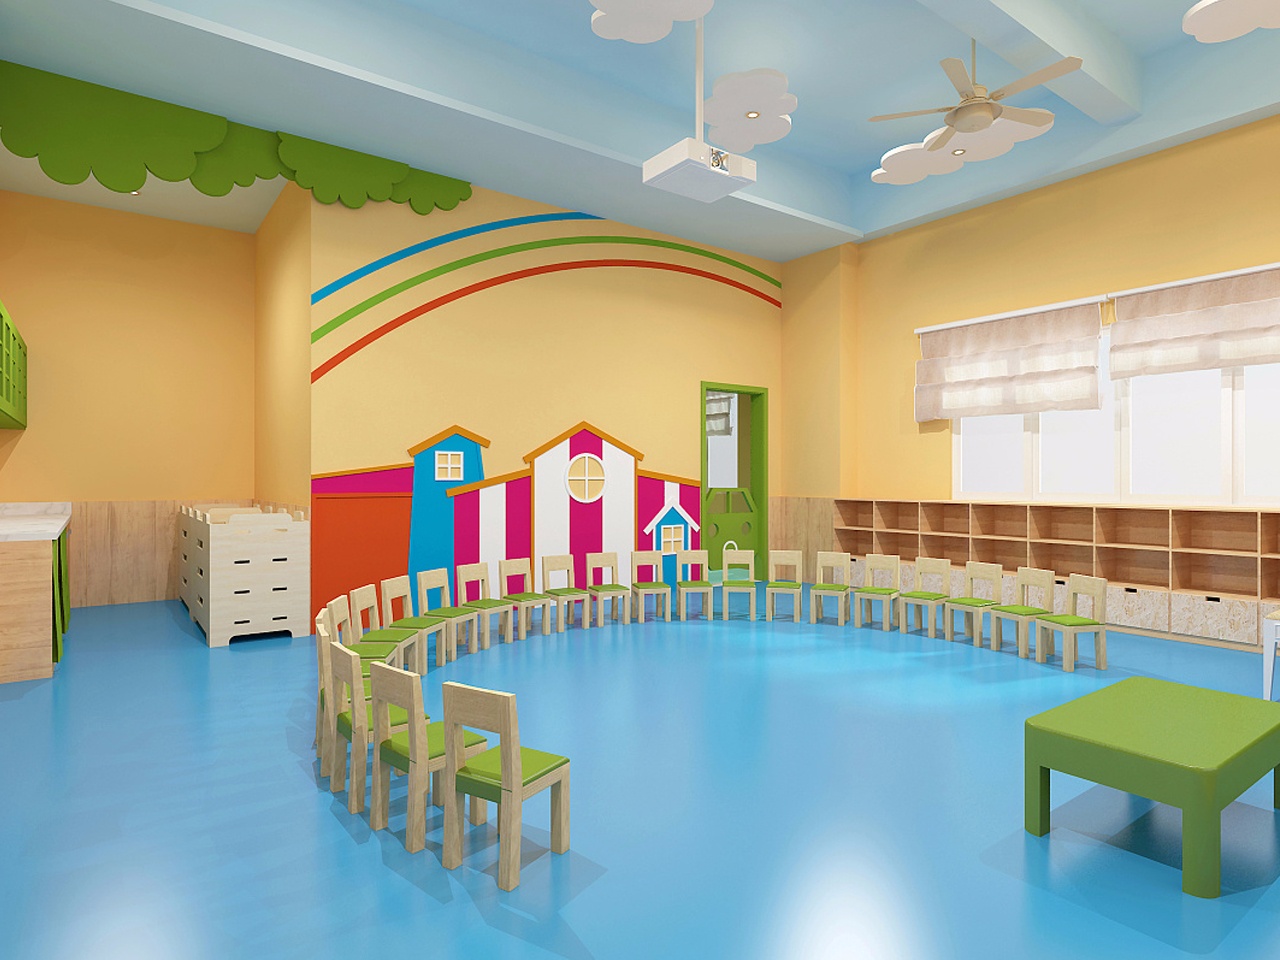 郑州幼儿园和早教中心装修设计7大必备知识点